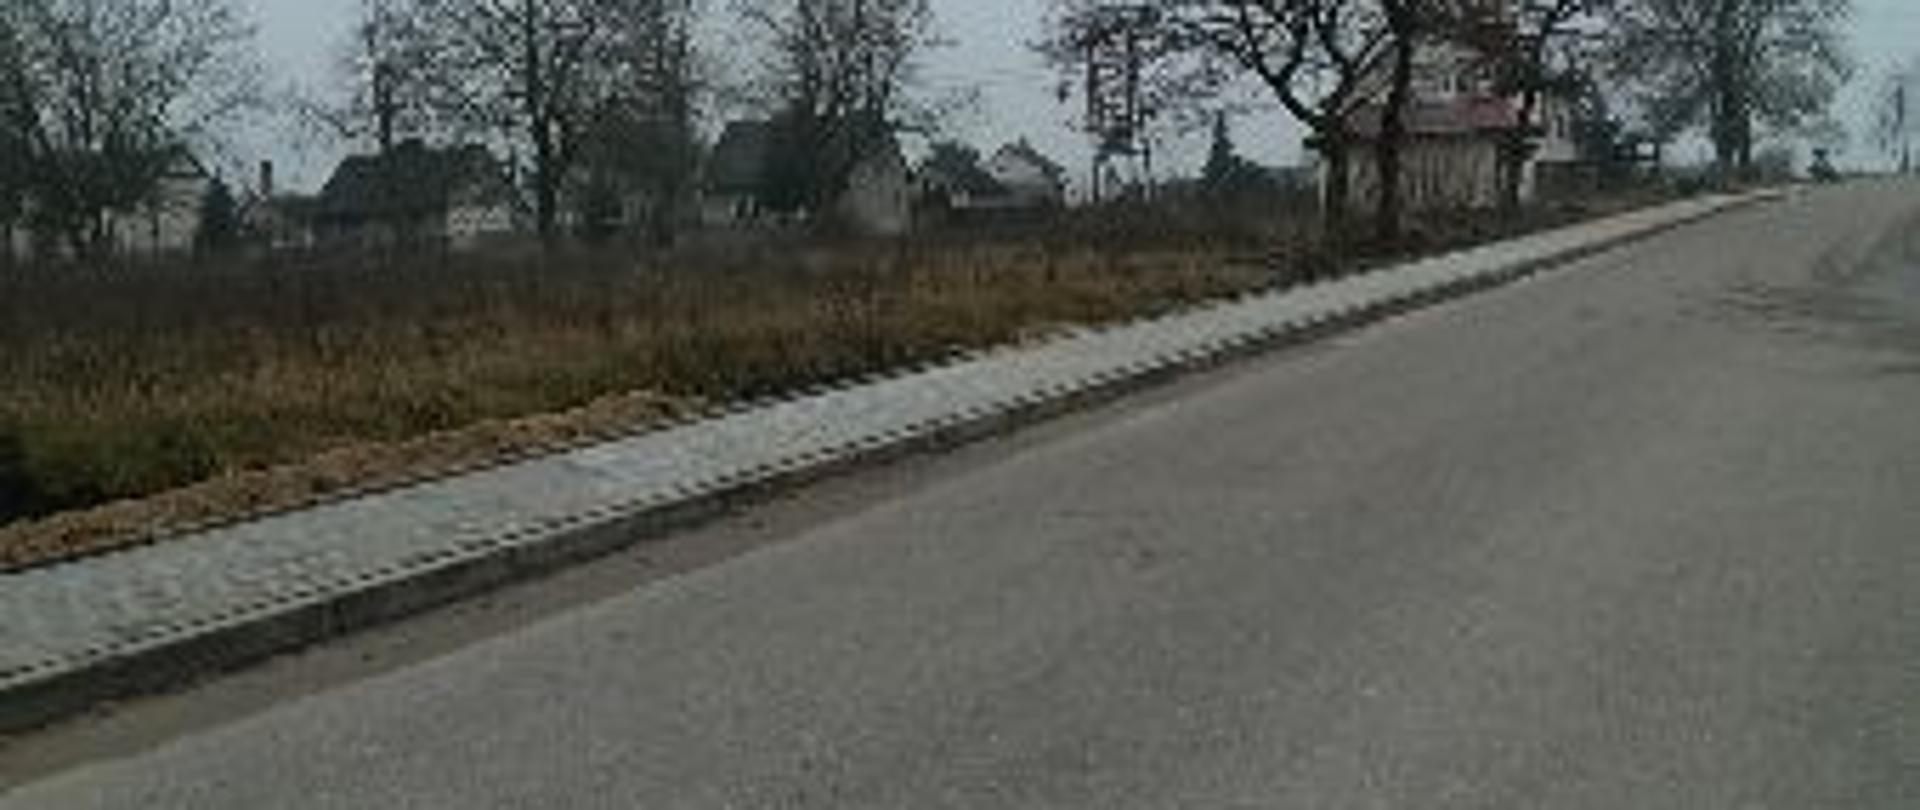 Zdjęcie przedstawia wyremontowany chodnik w Chromakowie. W tle drzewa i domy.